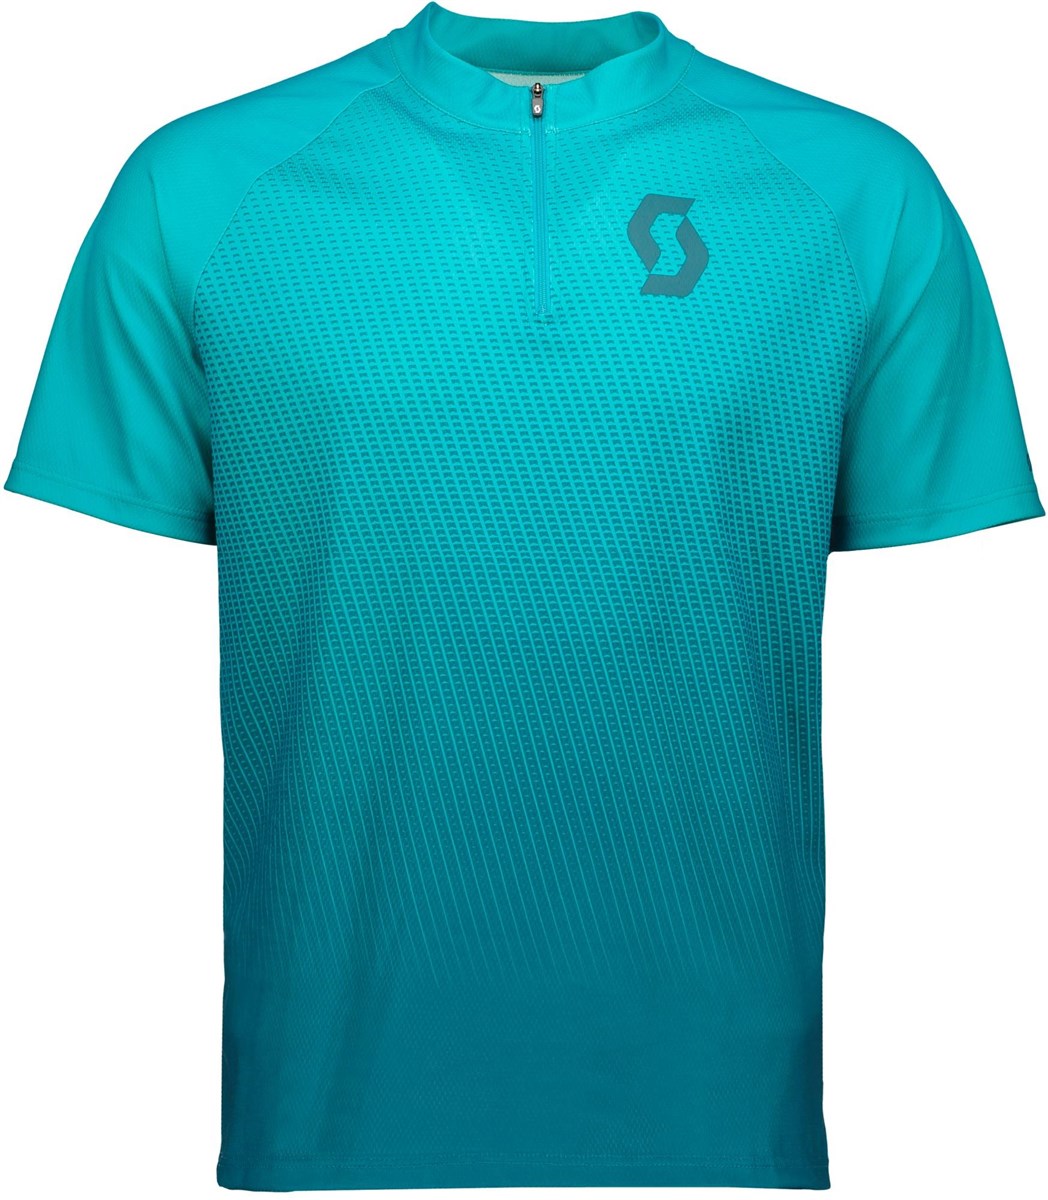 Scott Trail 40 Short Sleeve Cycling Shirt / Jersey